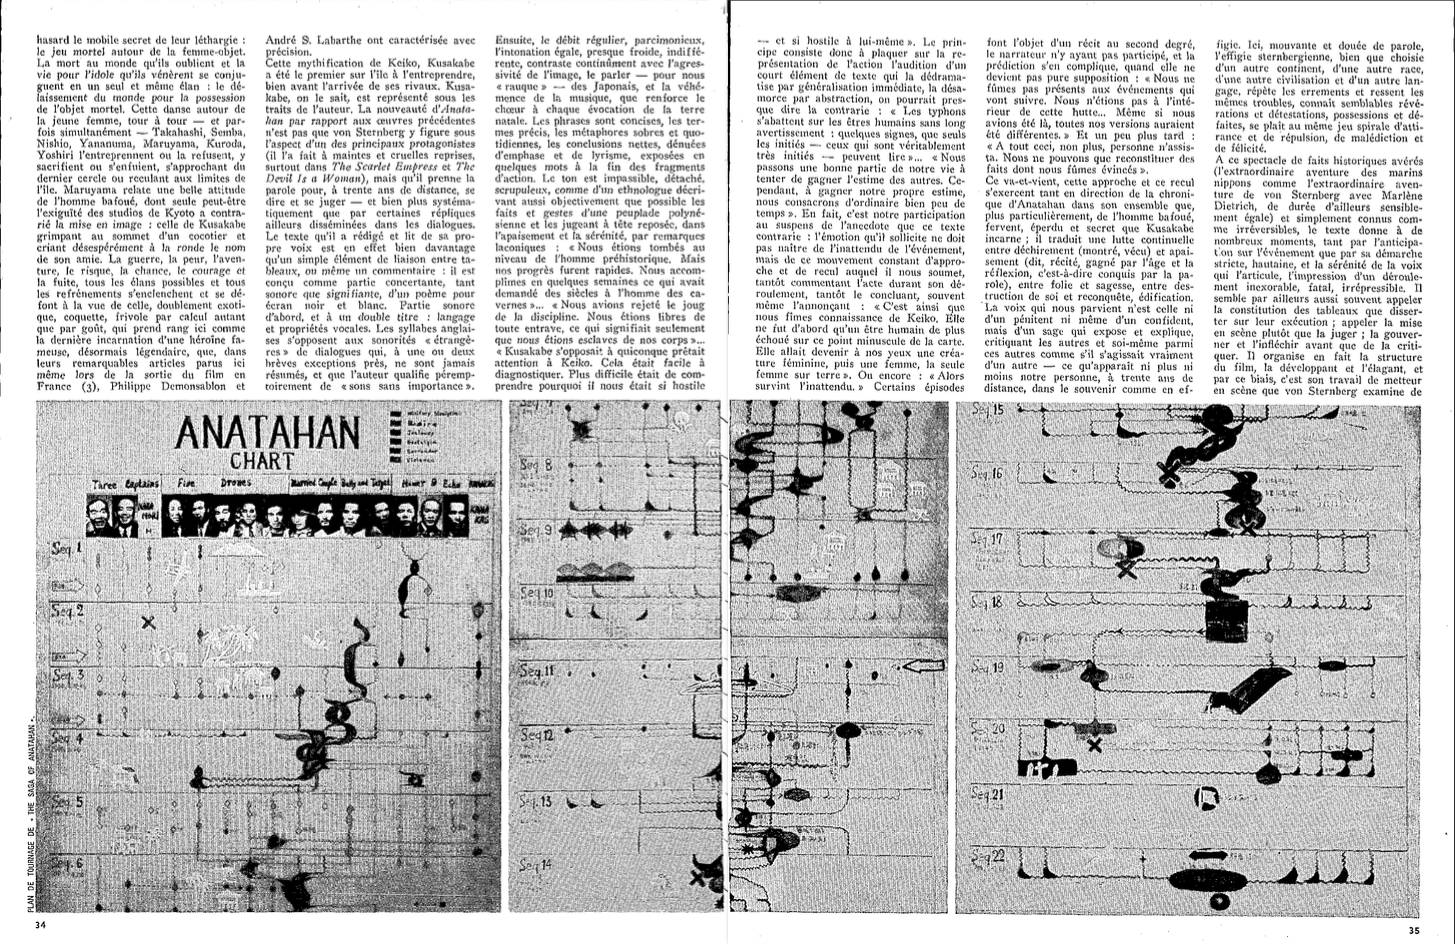 Cahiers du cinéma n°168, juillet 1965. Pages 34 et 35 : diagramme d'Anatahan en illustration d'« Une aventure de la lumière » de Claude Ollier.